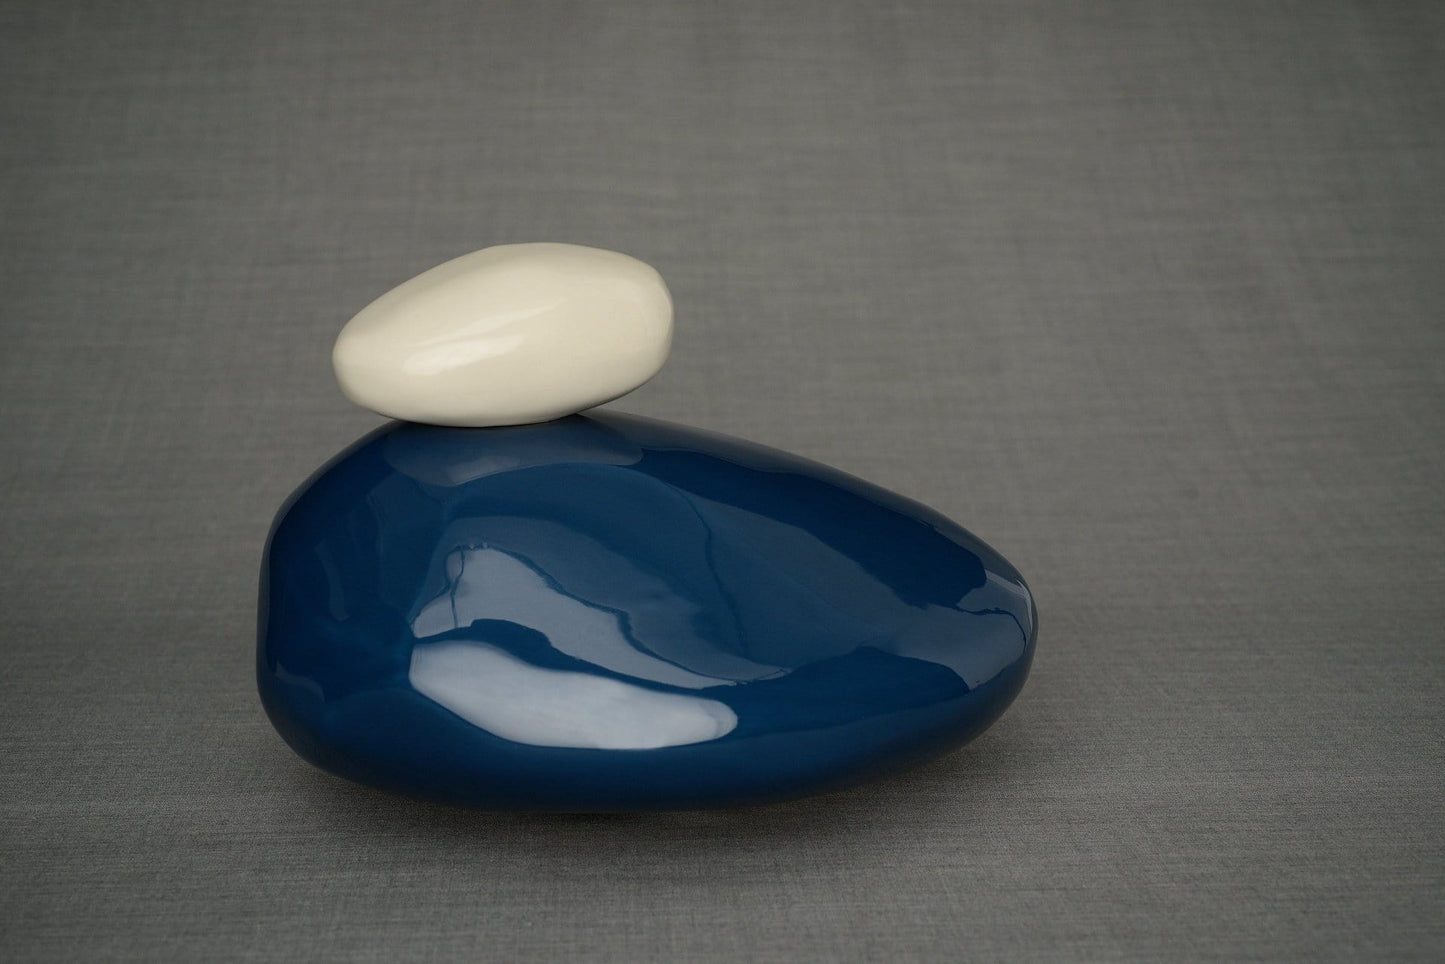 Stone Handmade Cremation Urn for Ashes, size Large/Adult, color Light Cobalt-Pulvis Art Urns